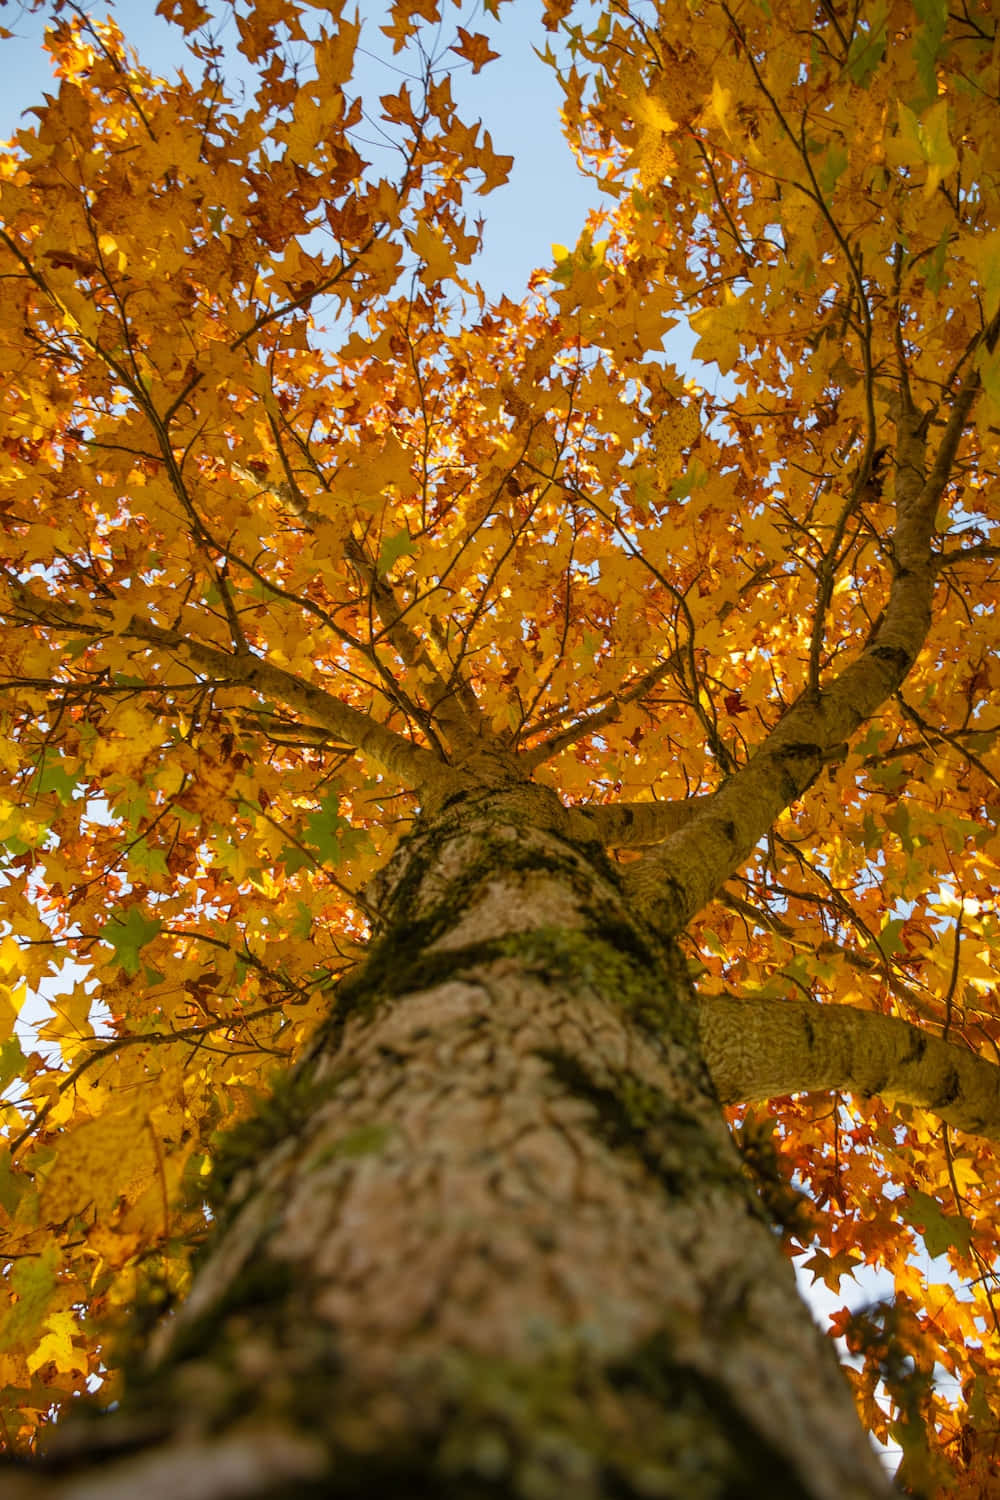 Machensie Eine Entspannende Pause, Um Die Lebendige Schönheit Der Natur Im Herbst Zu Erleben